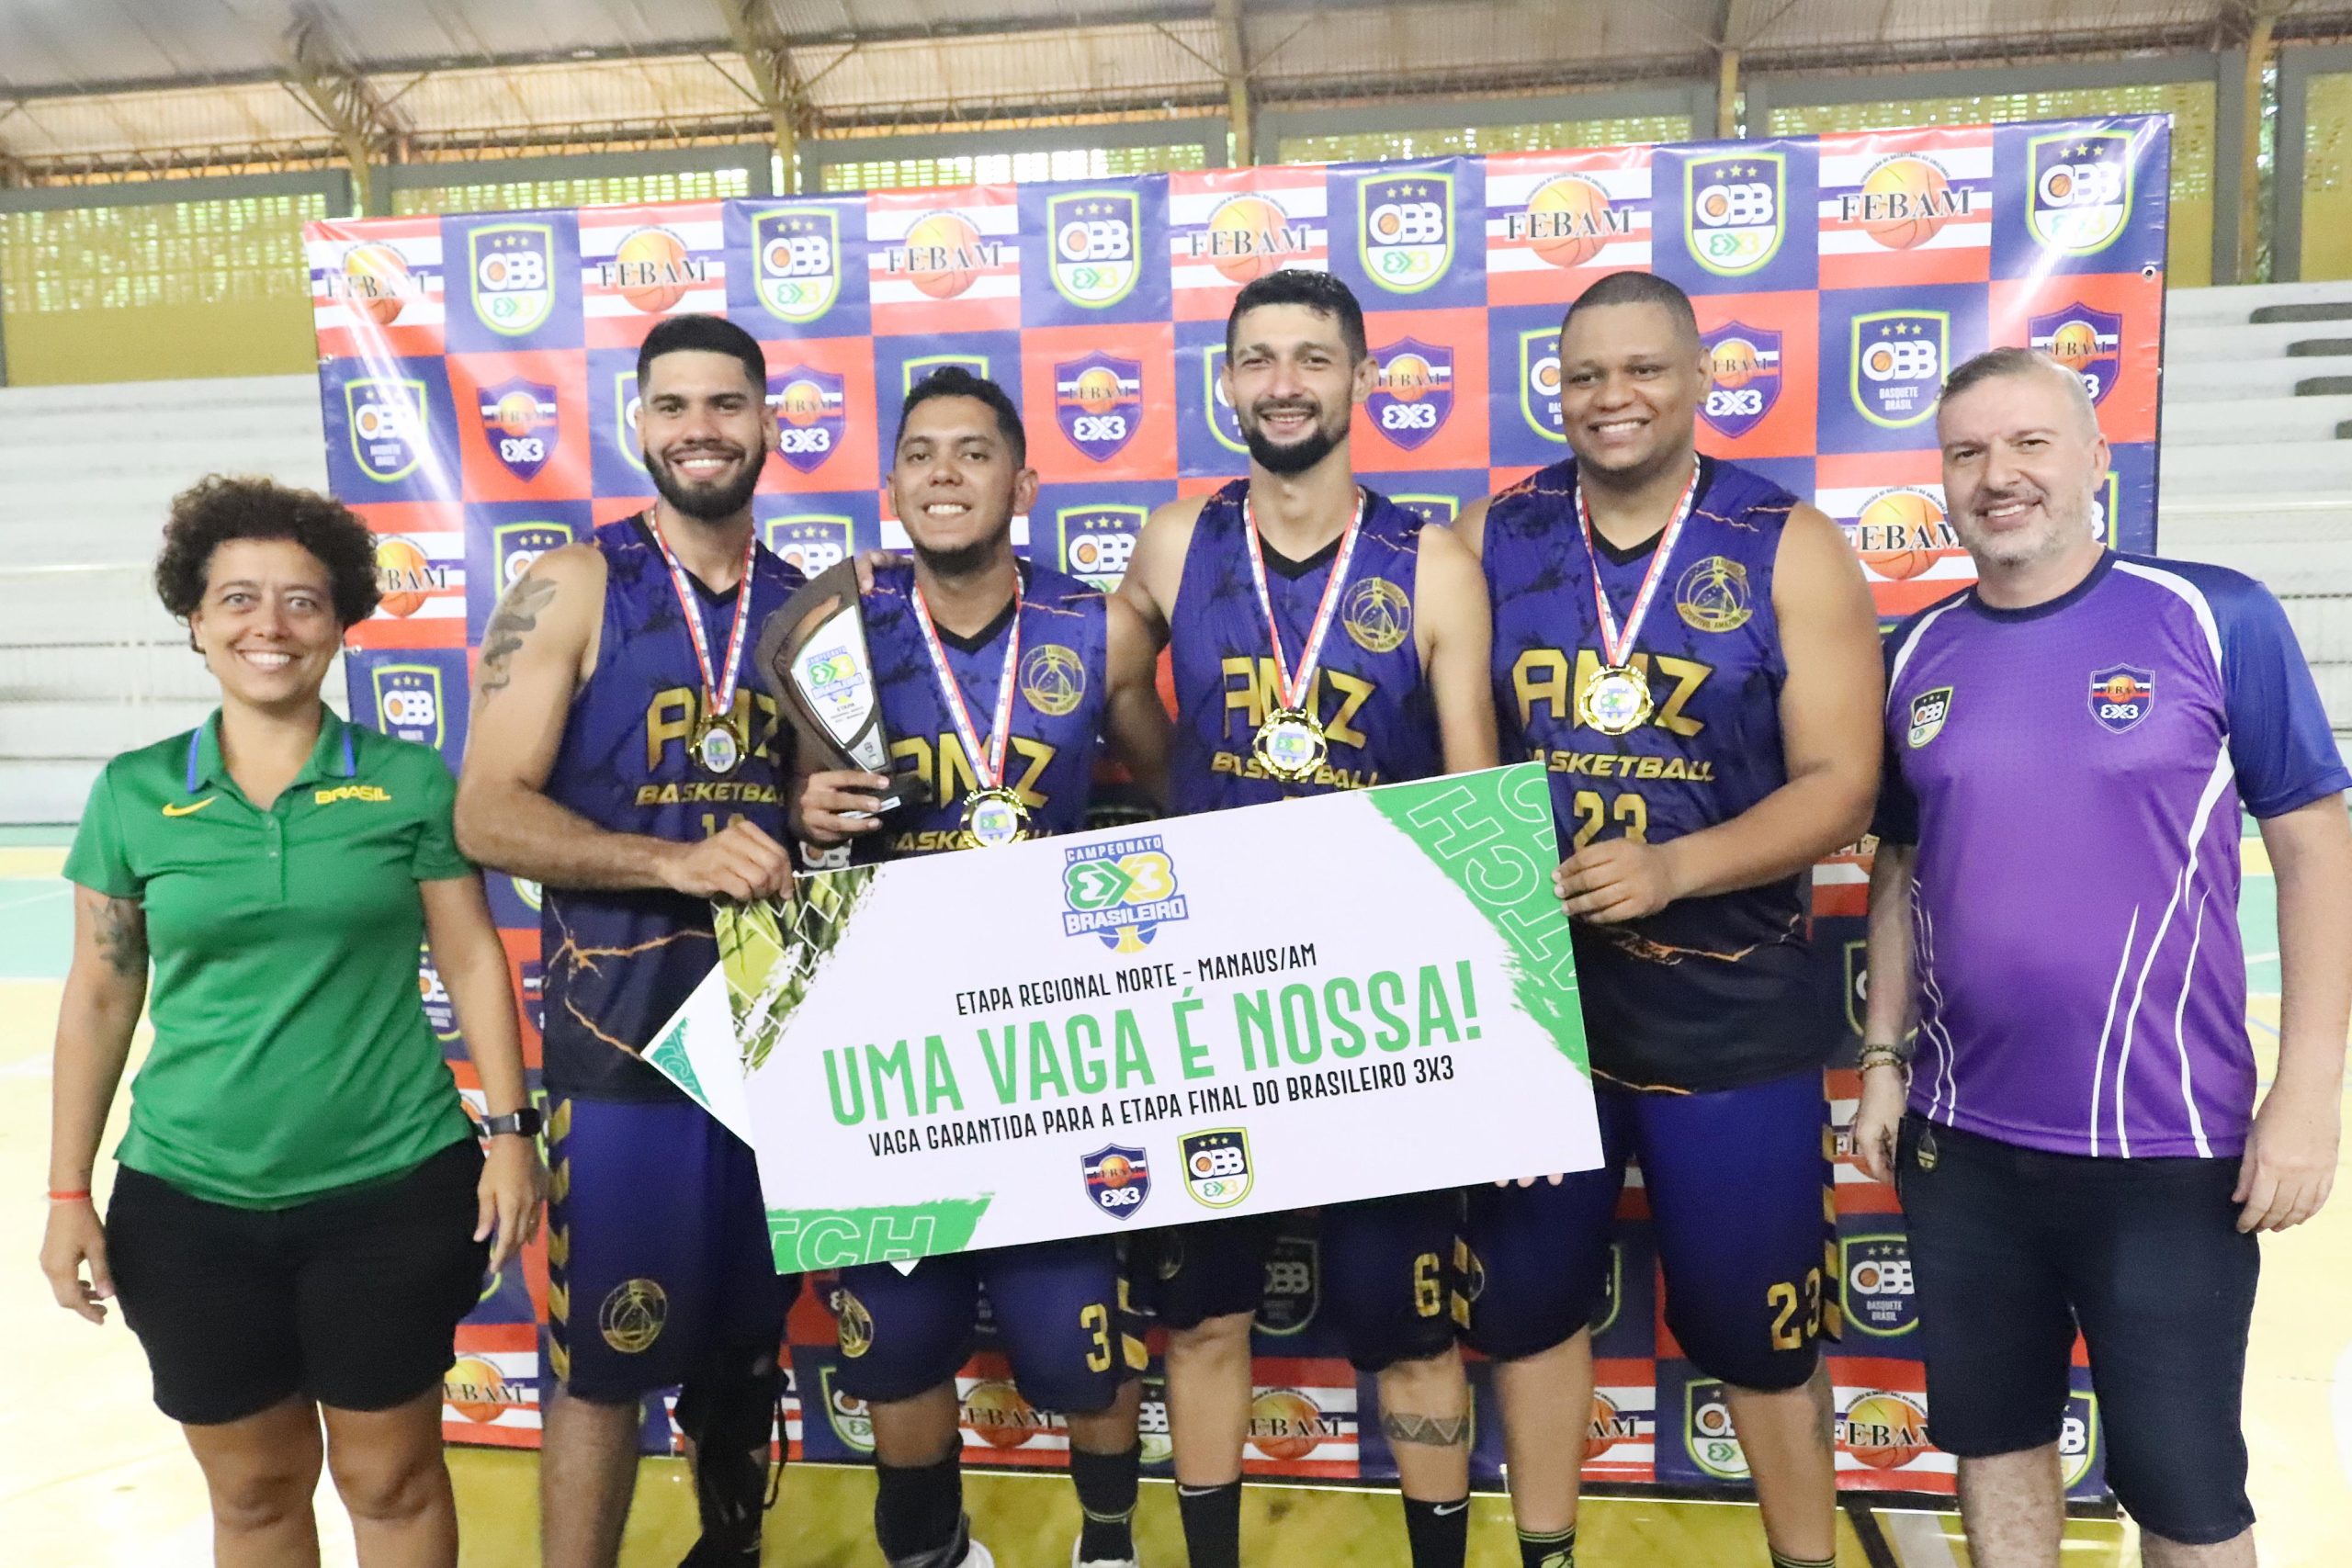 Manaus recebe Etapa Regional Norte do Campeonato Brasileiro de Basquete 3x3  neste fim de semana